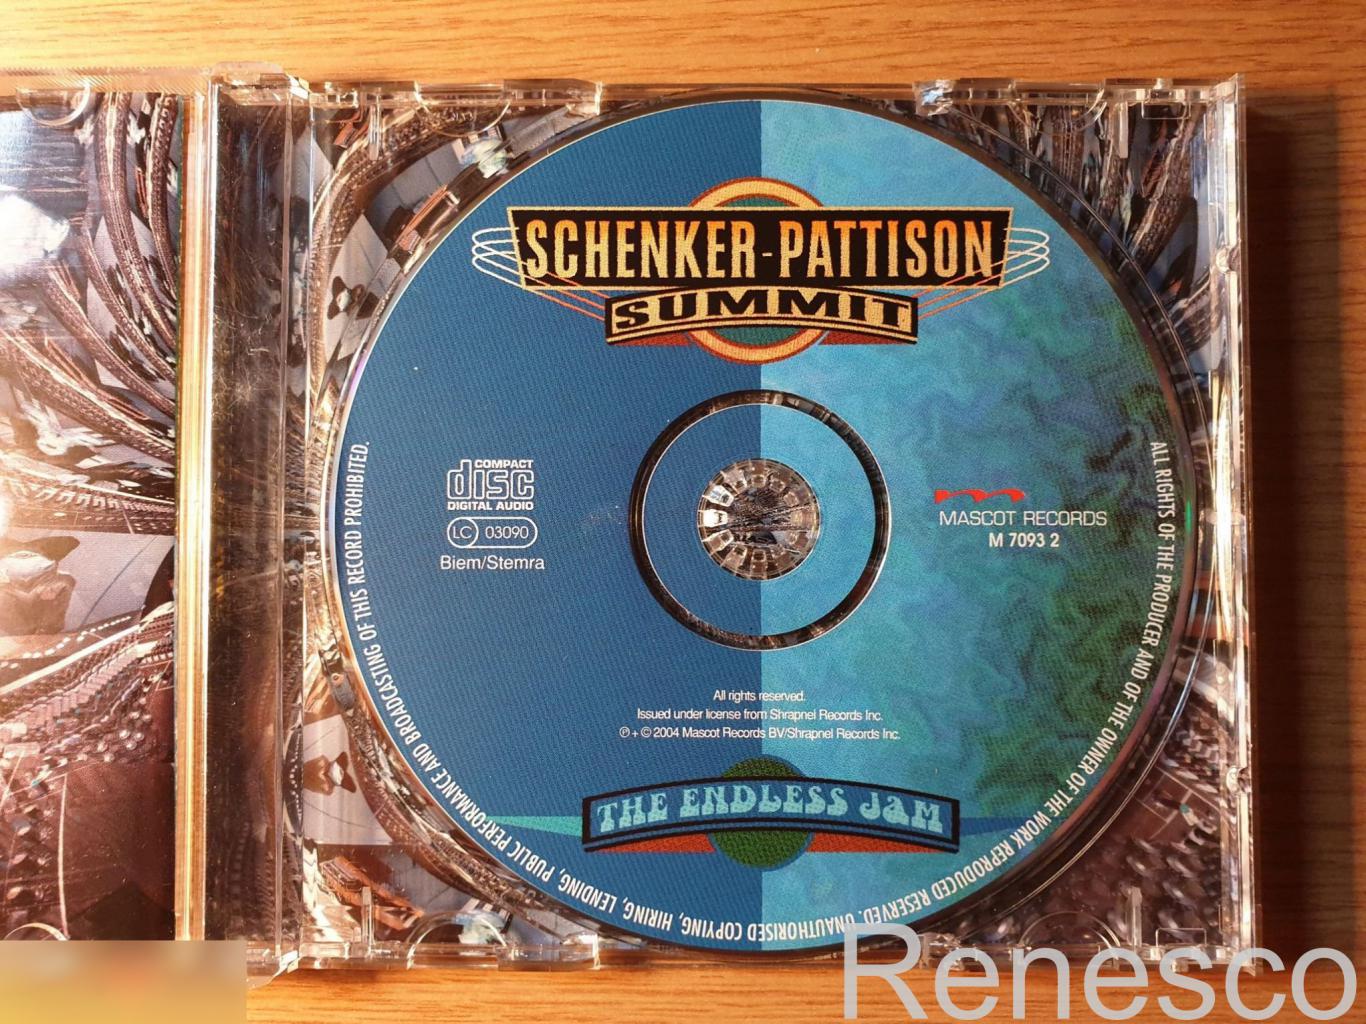 (CD) Schenker-Pattison Summit ?– The Endless Jam (2004) (Europe) 4